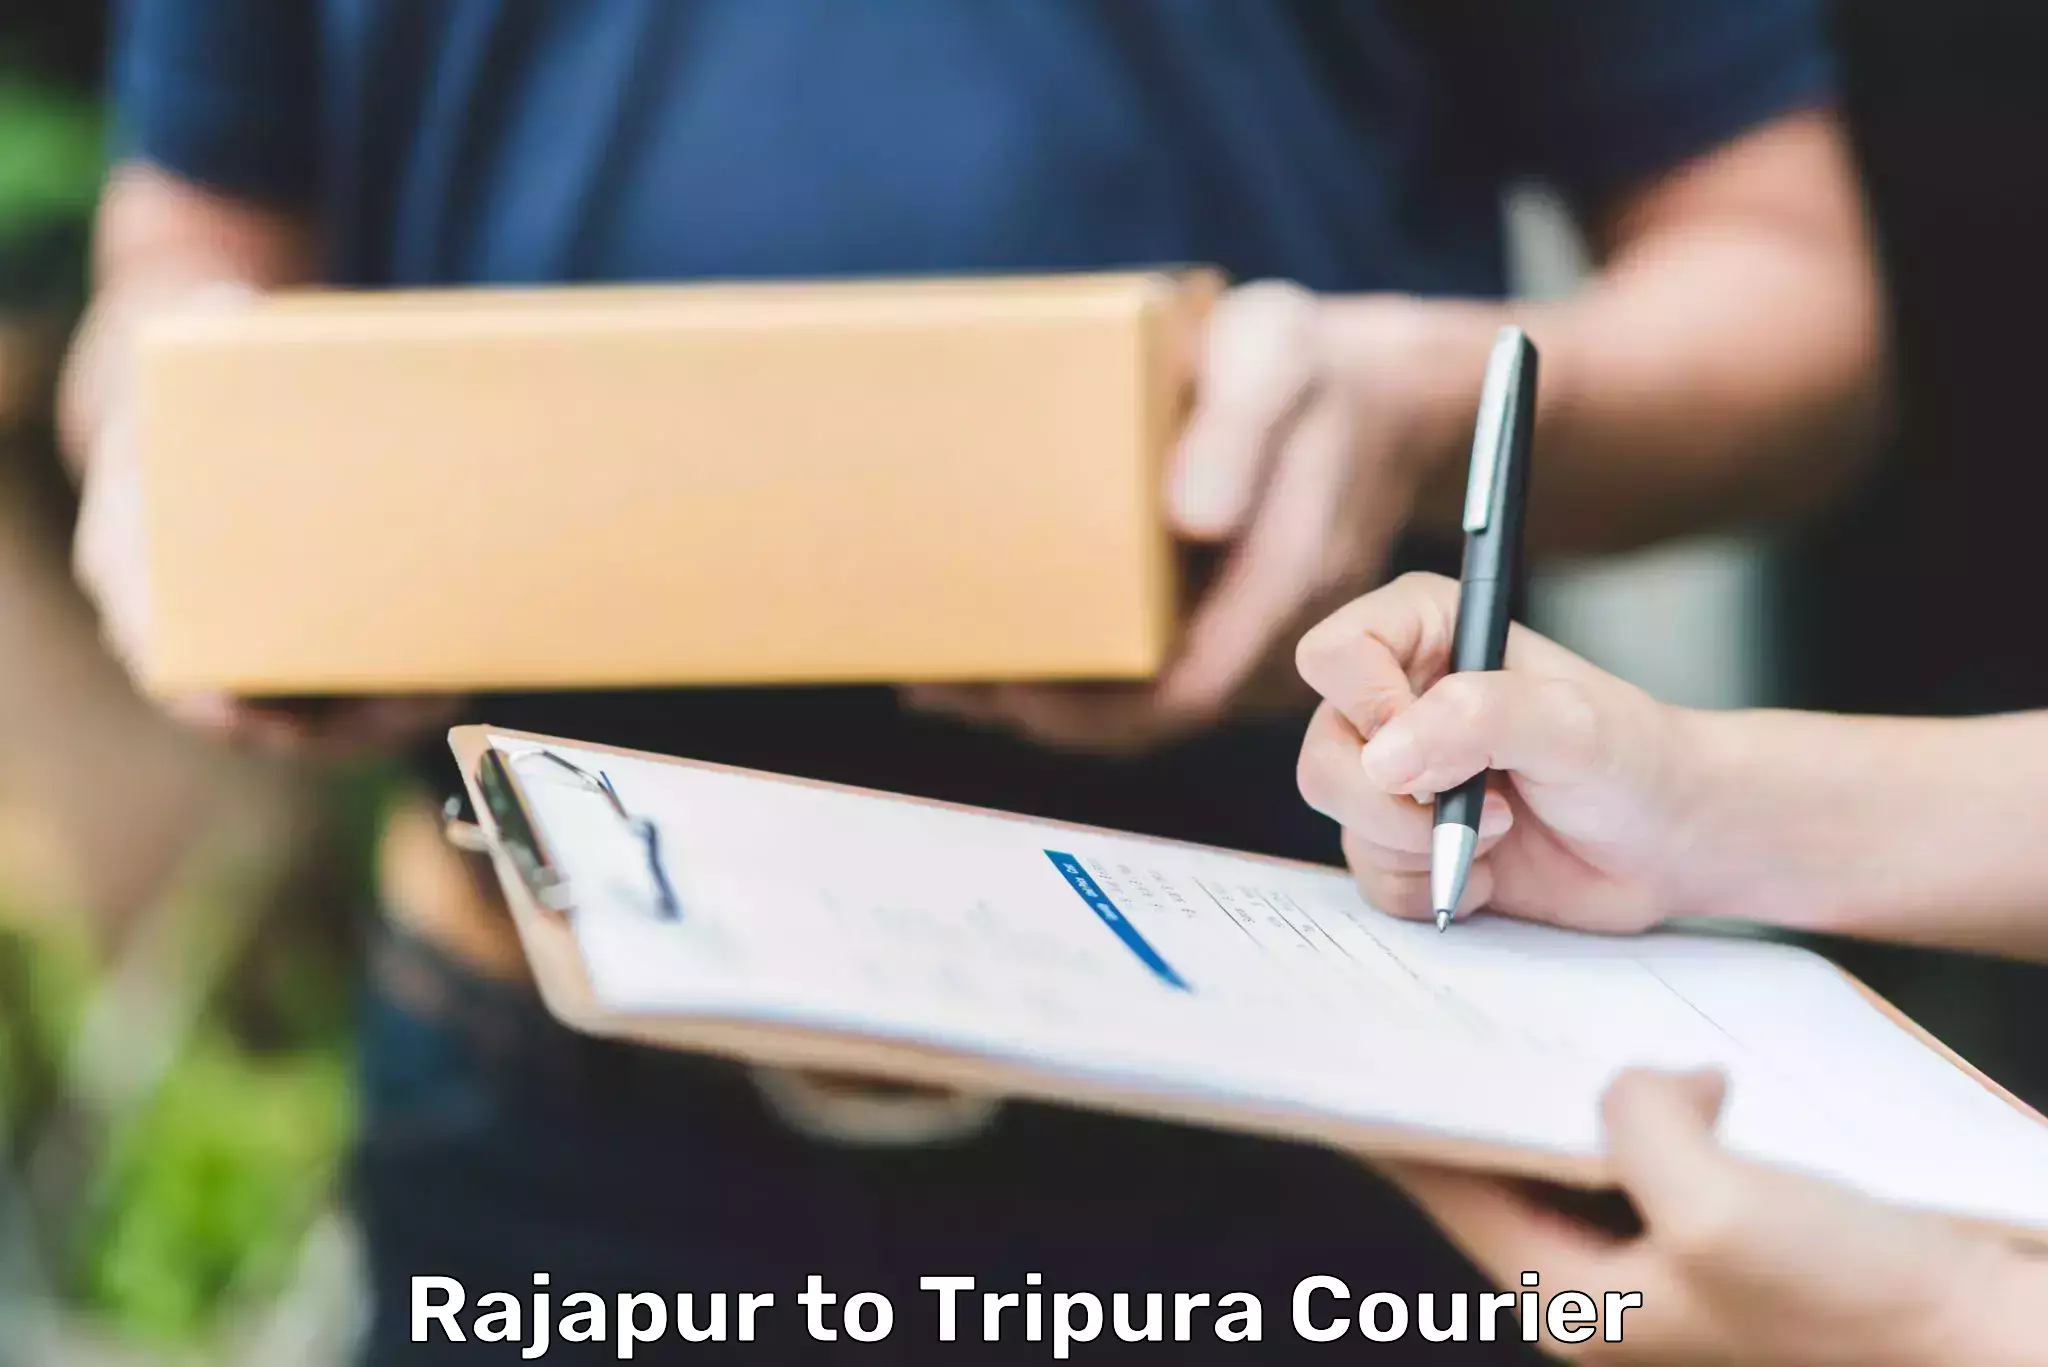 Courier service comparison Rajapur to Kailashahar